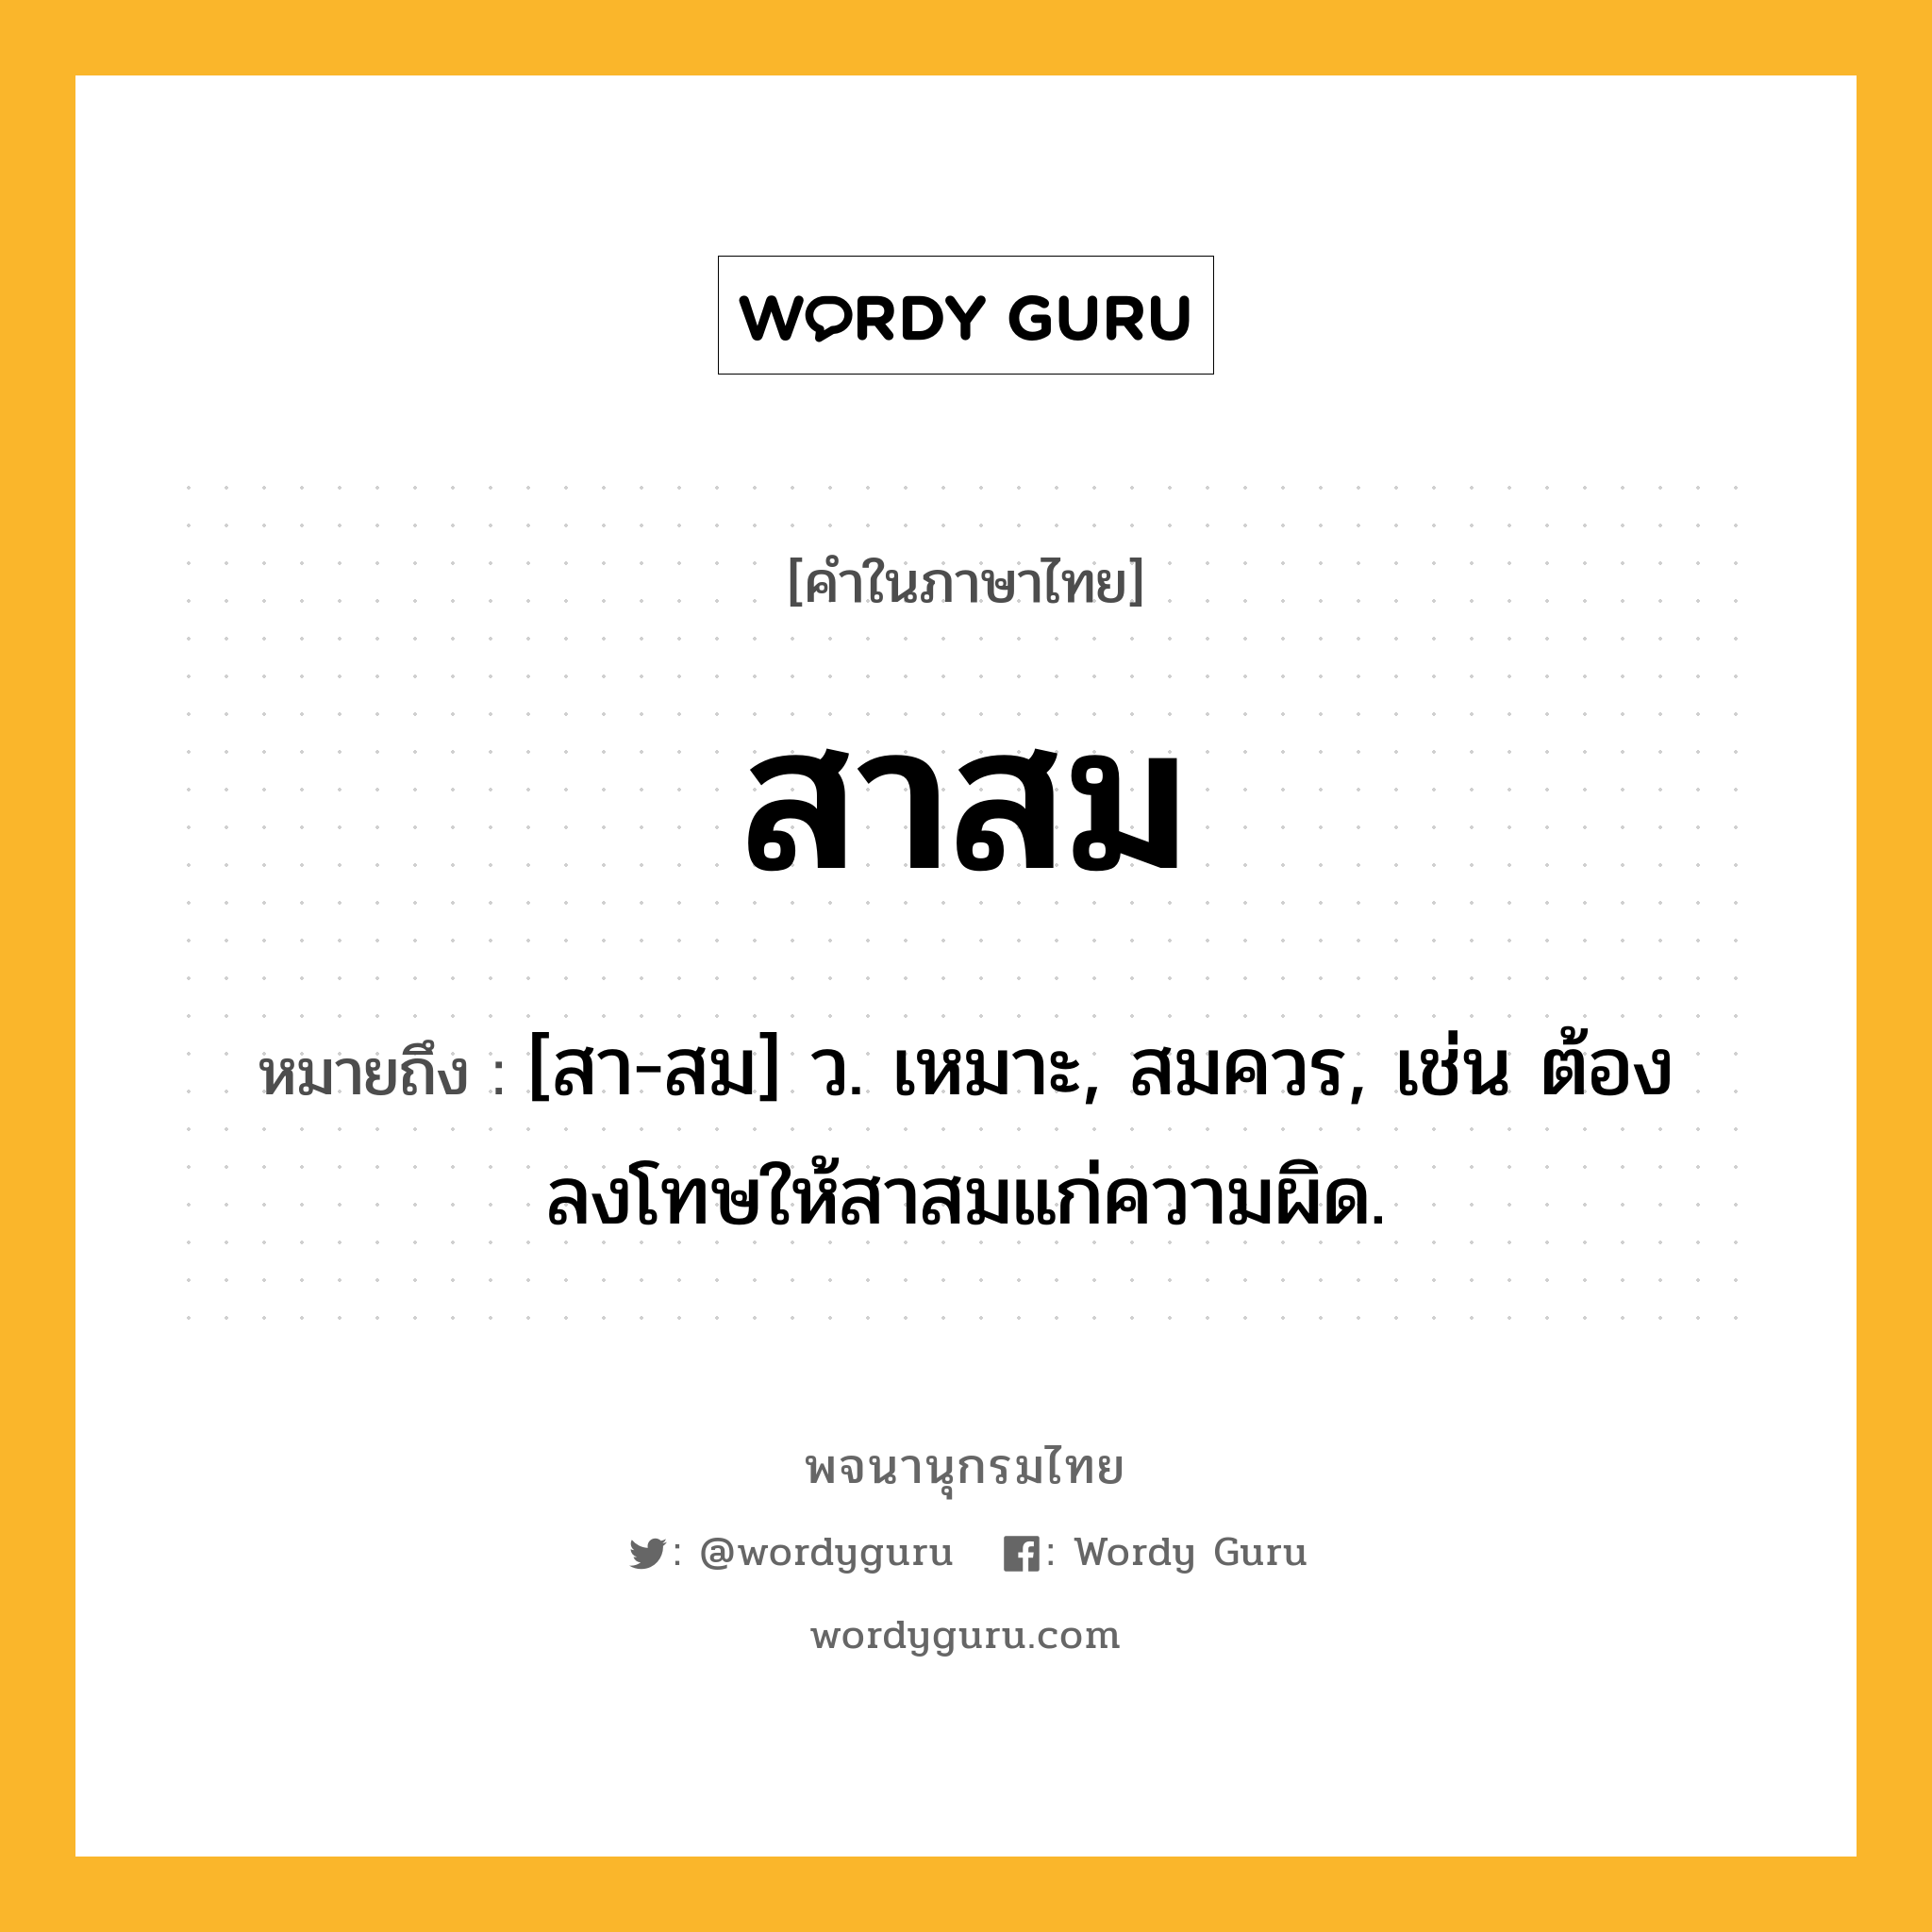 สาสม ความหมาย หมายถึงอะไร?, คำในภาษาไทย สาสม หมายถึง [สา-สม] ว. เหมาะ, สมควร, เช่น ต้องลงโทษให้สาสมแก่ความผิด.